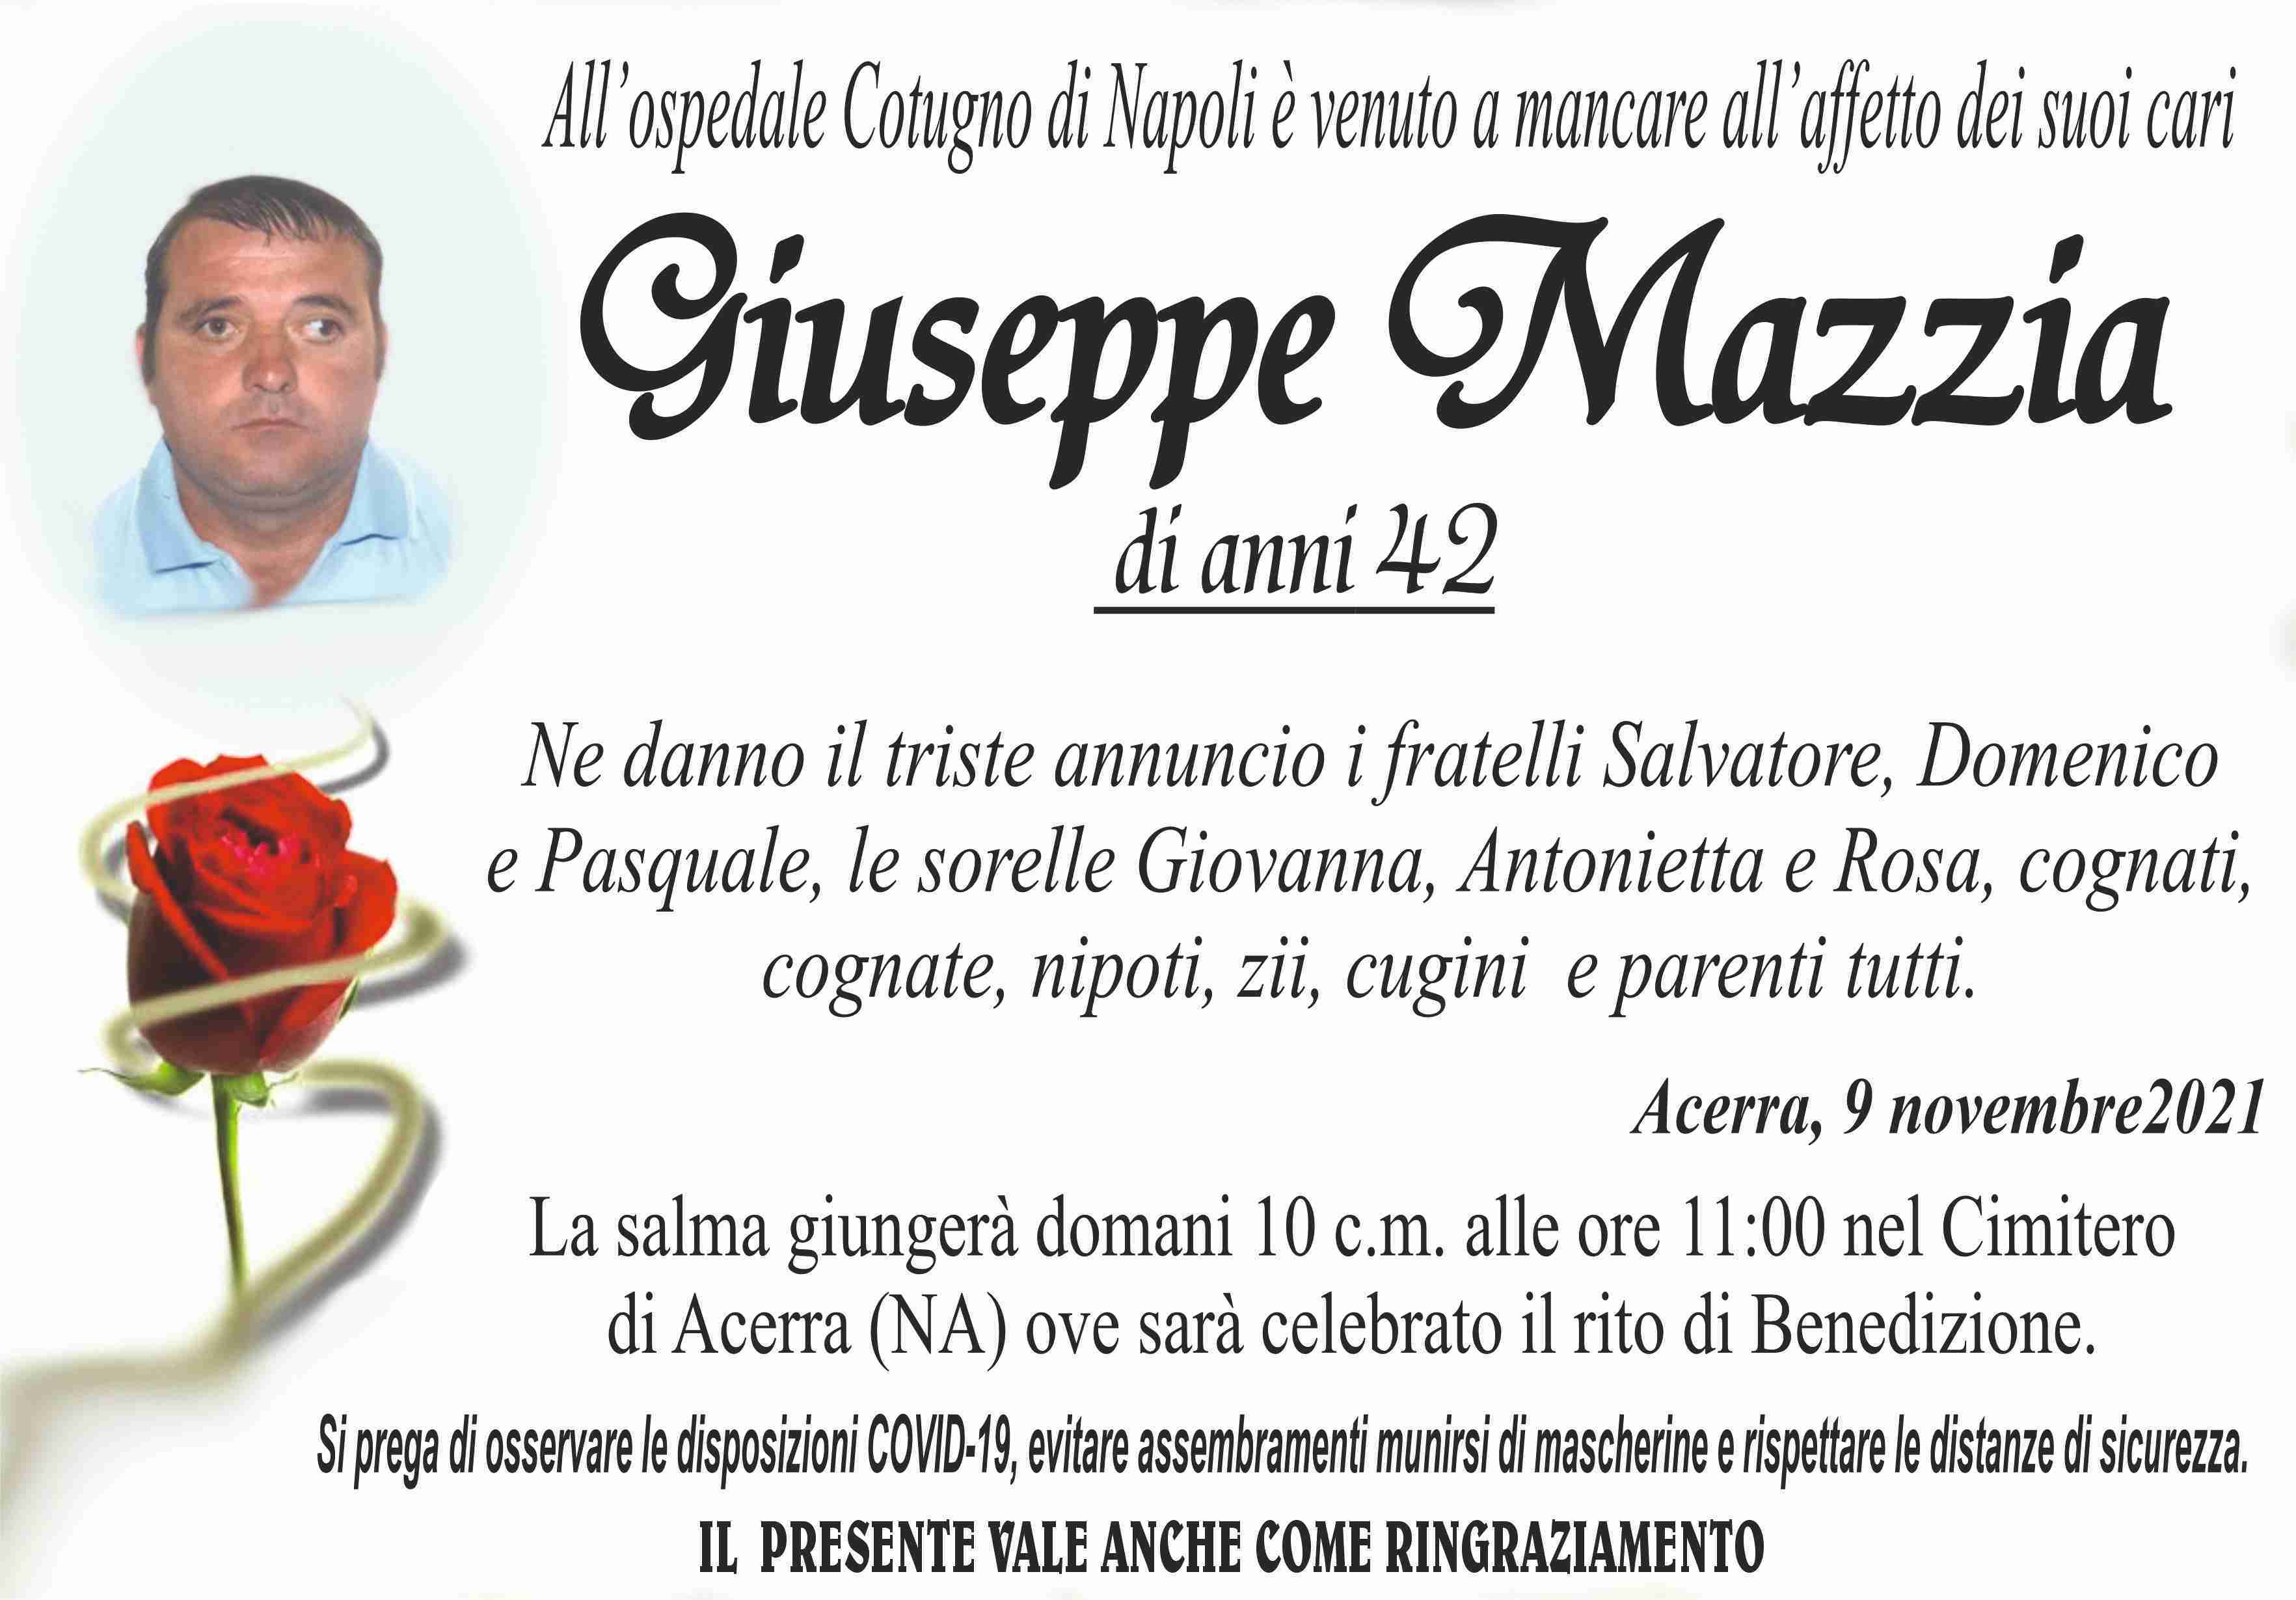 Giuseppe Mazzia